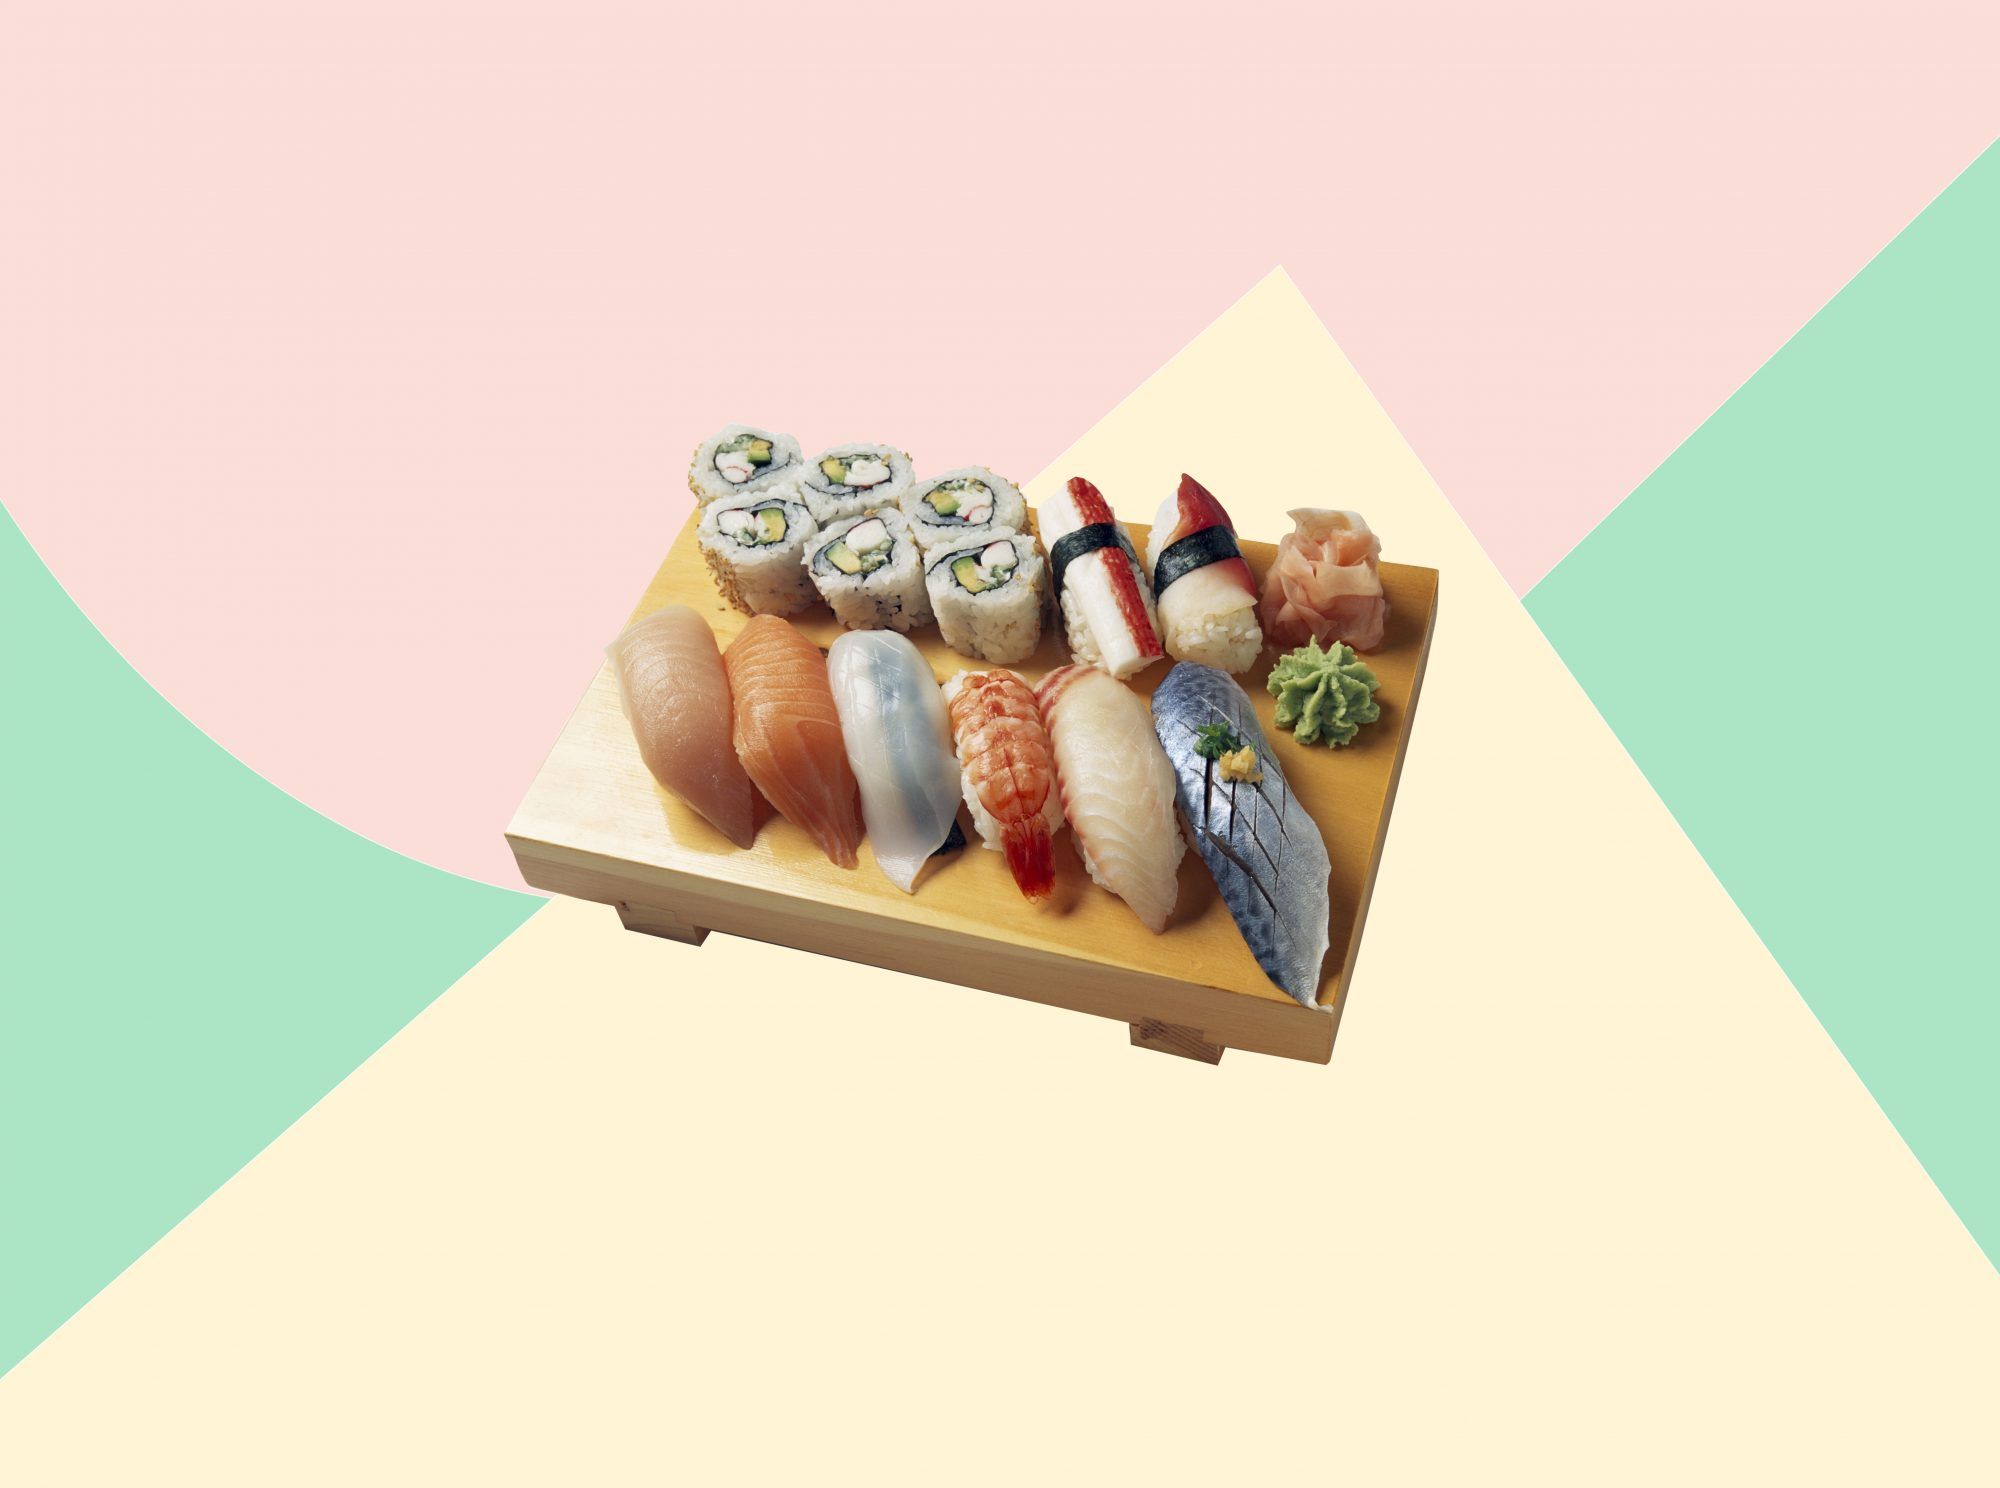 Dit is de beste en enige manier om sushi te eten, volgens een gerenommeerde sushichef